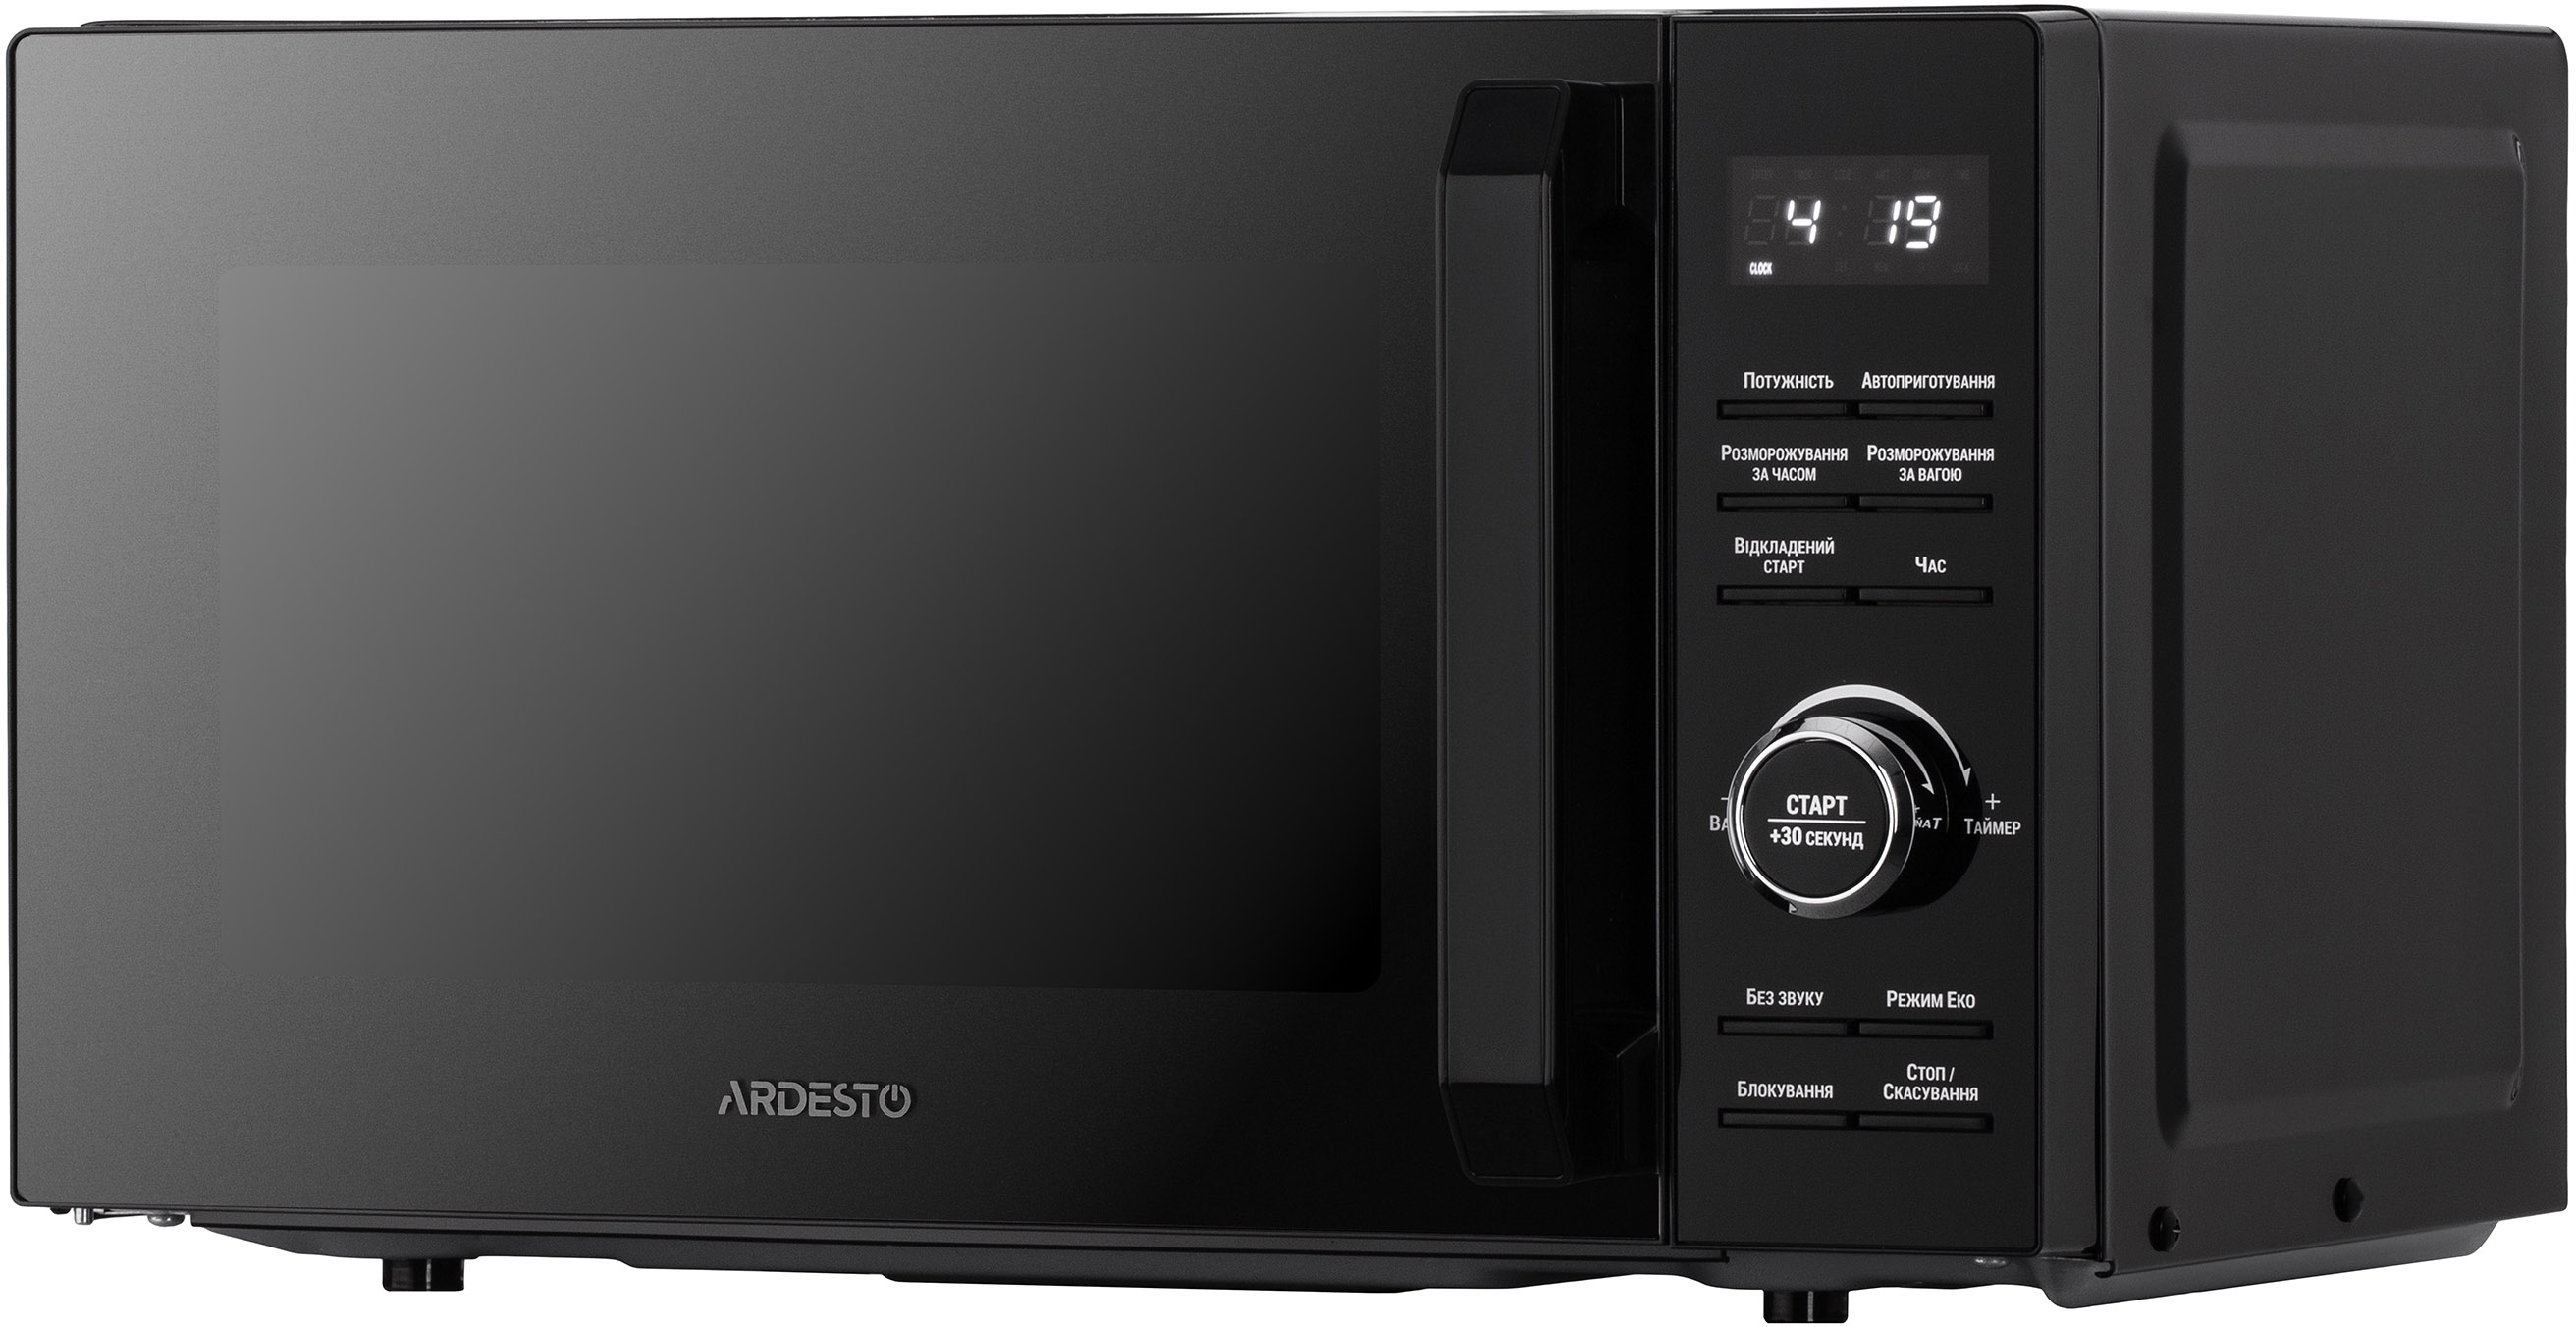 Купить микроволновая печь Ardesto GO-E745GB в Чернигове